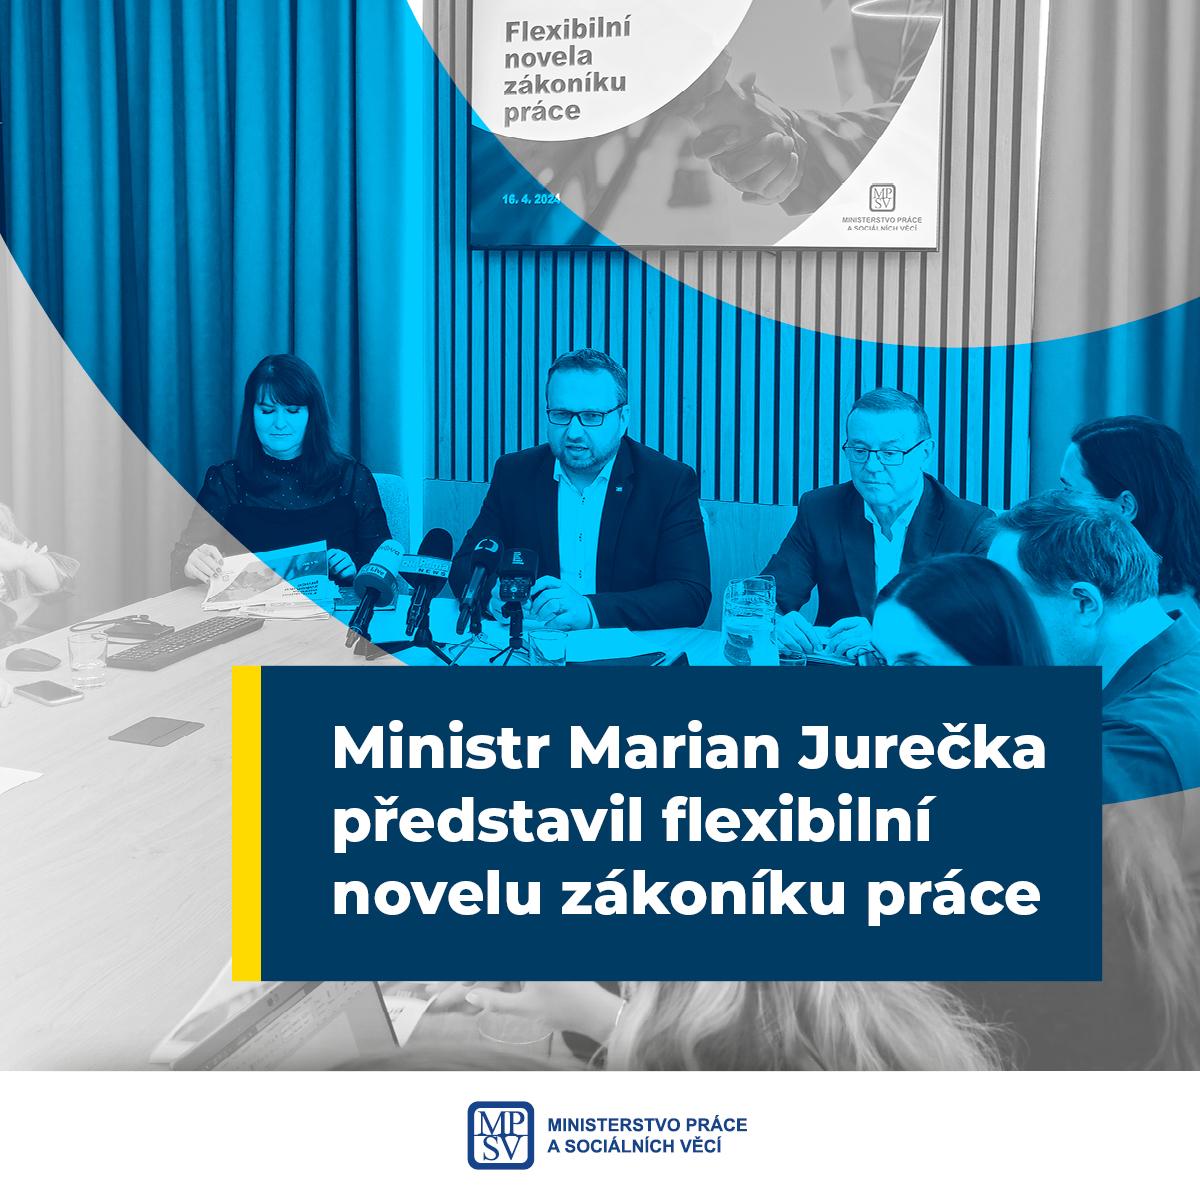 Ministr Jurečka představil flexibilní novelu zákoníku práce